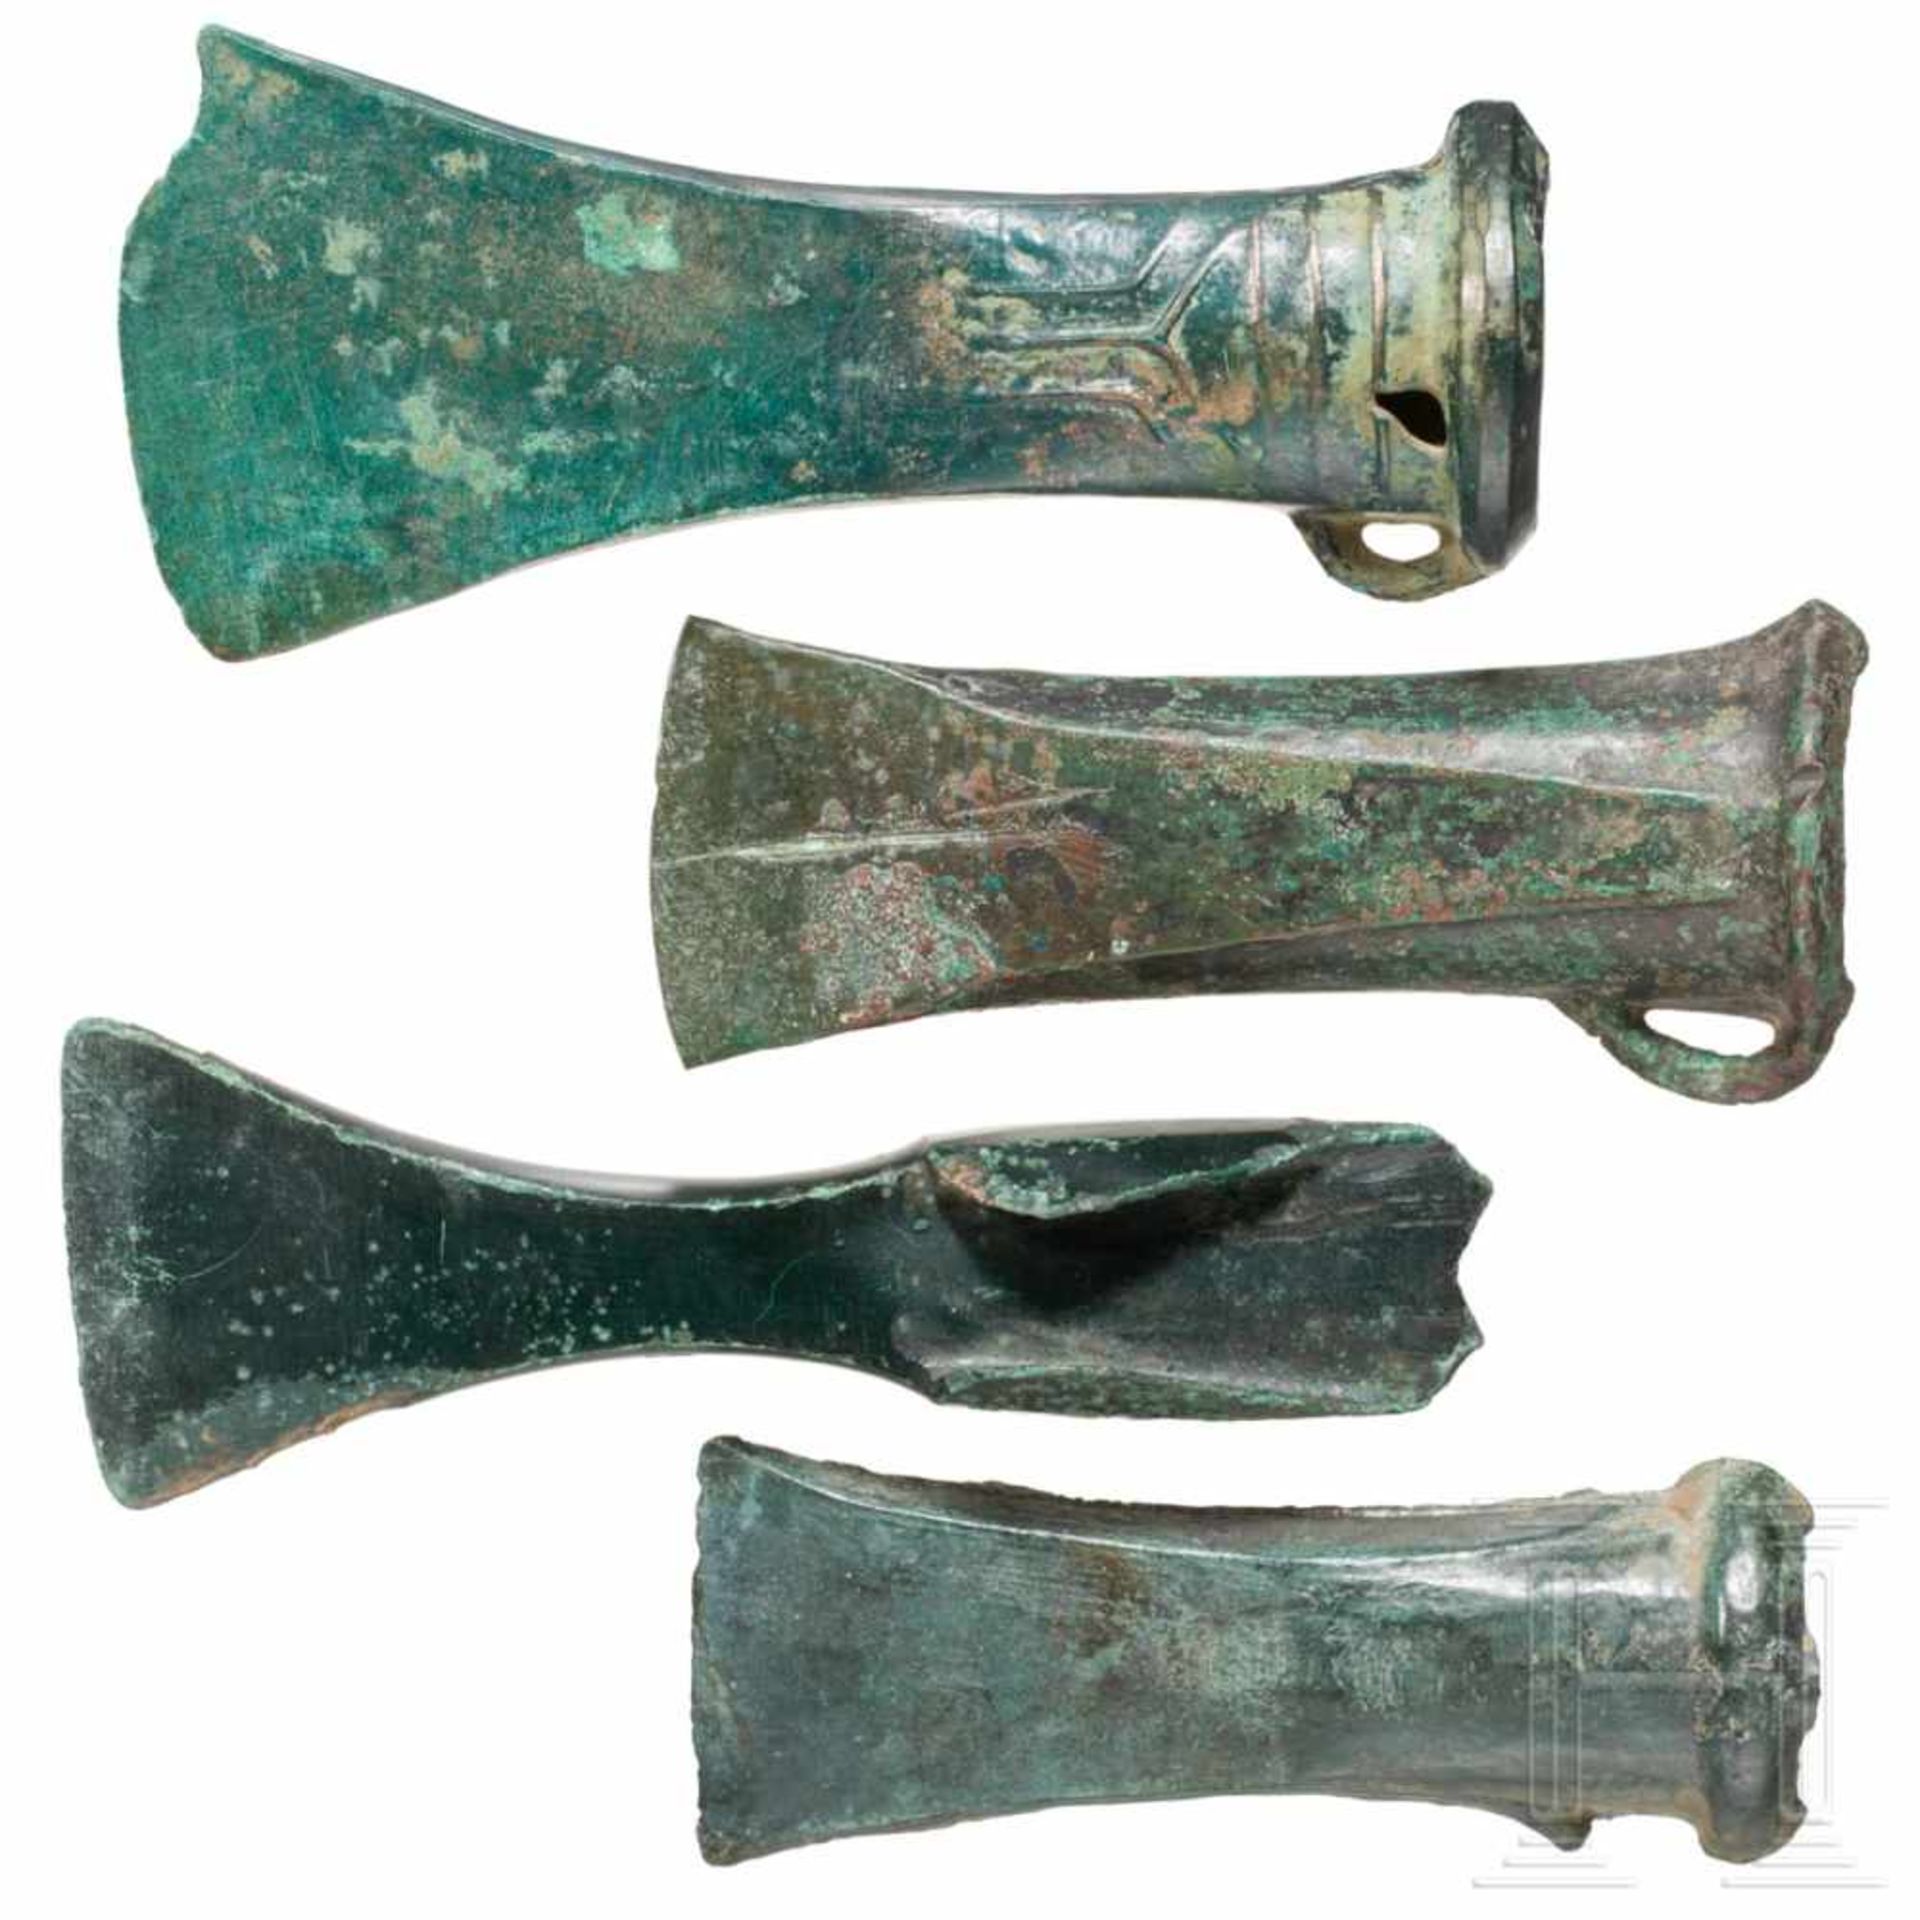 Drei Tüllenbeile und ein Lappenbeil, Mitteleuropa, 1. Hälfte 1. Jtsd. v. Chr. - Bild 2 aus 2